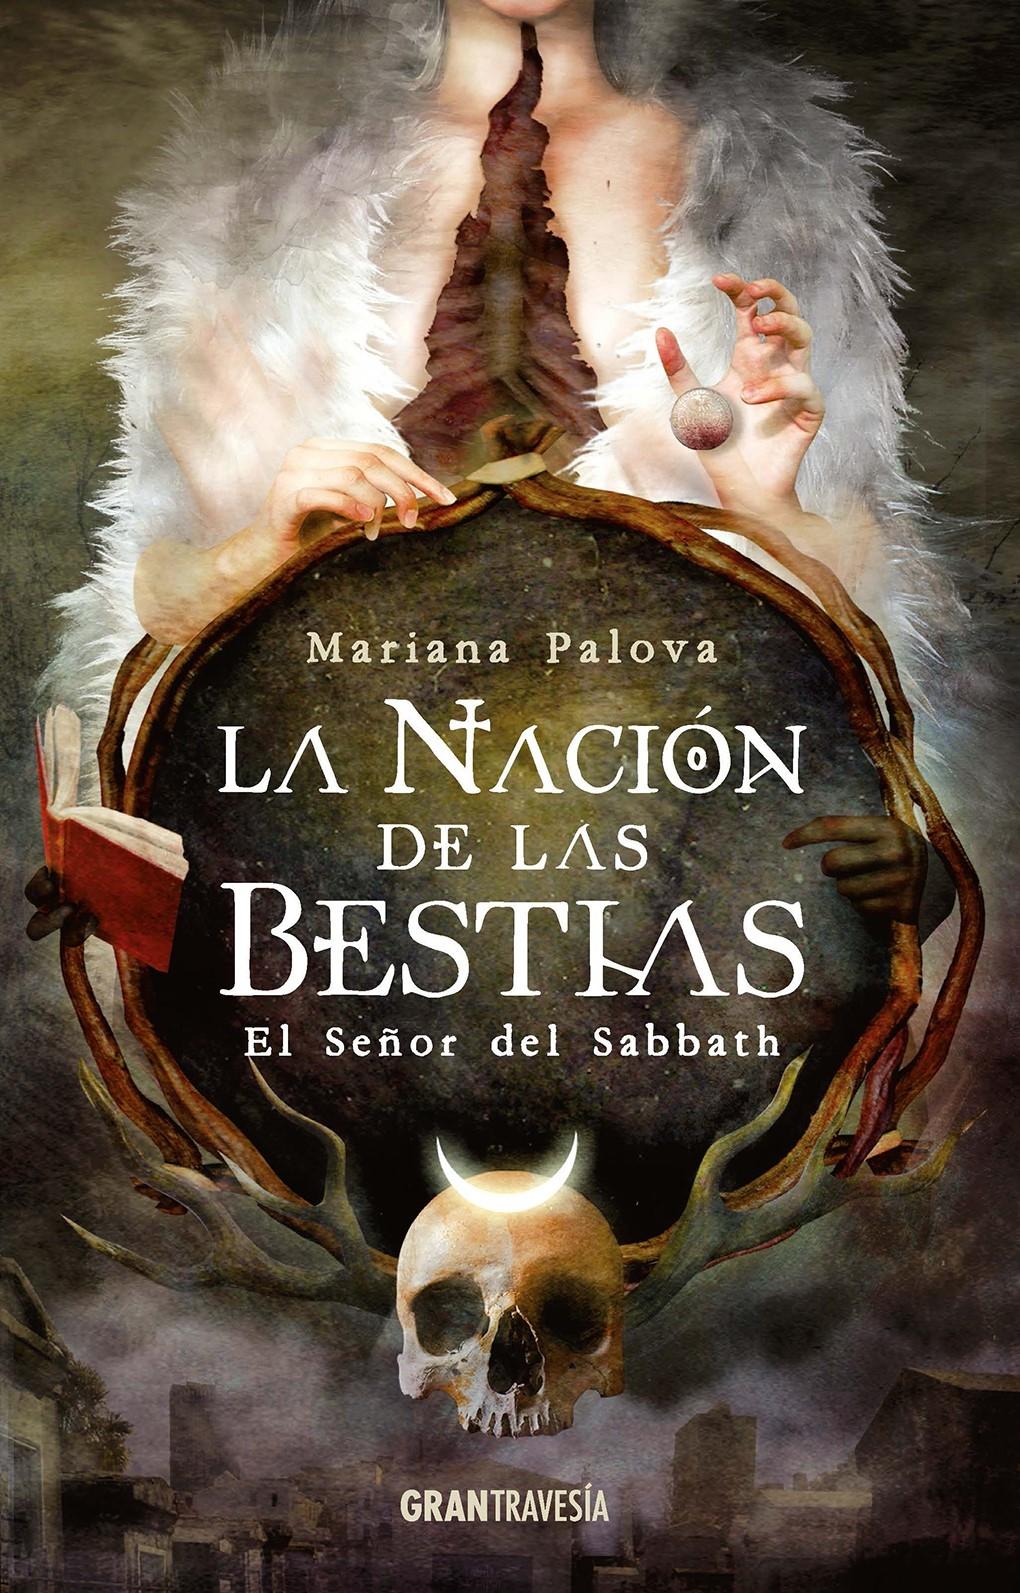 La Nación de las Bestias "El Señor del Sabbath". 